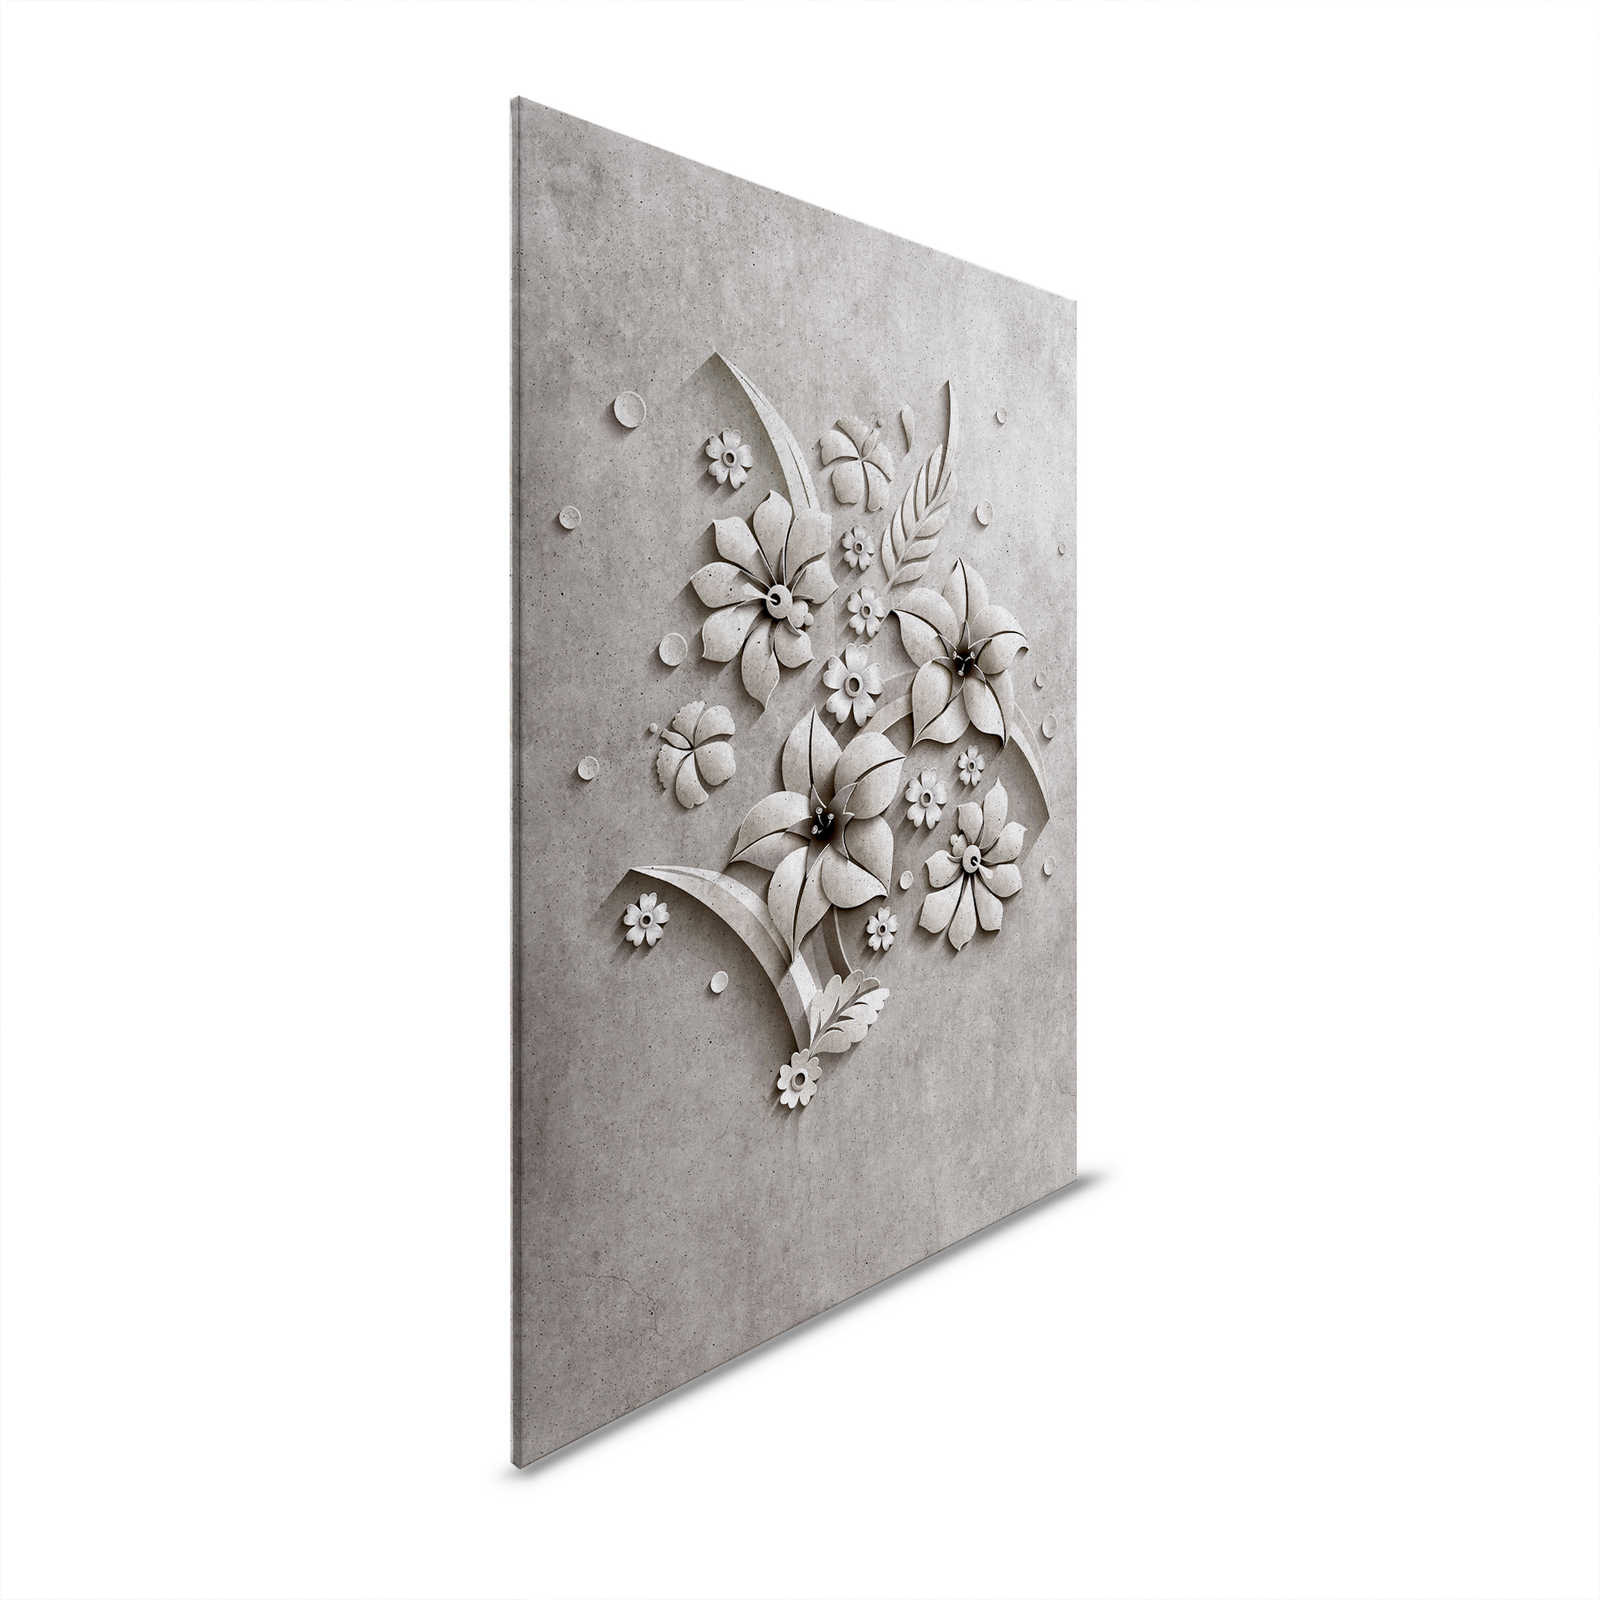 Relief 1 - Toile en béton À structure d'un relief de fleurs - 1,20 m x 0,80 m
